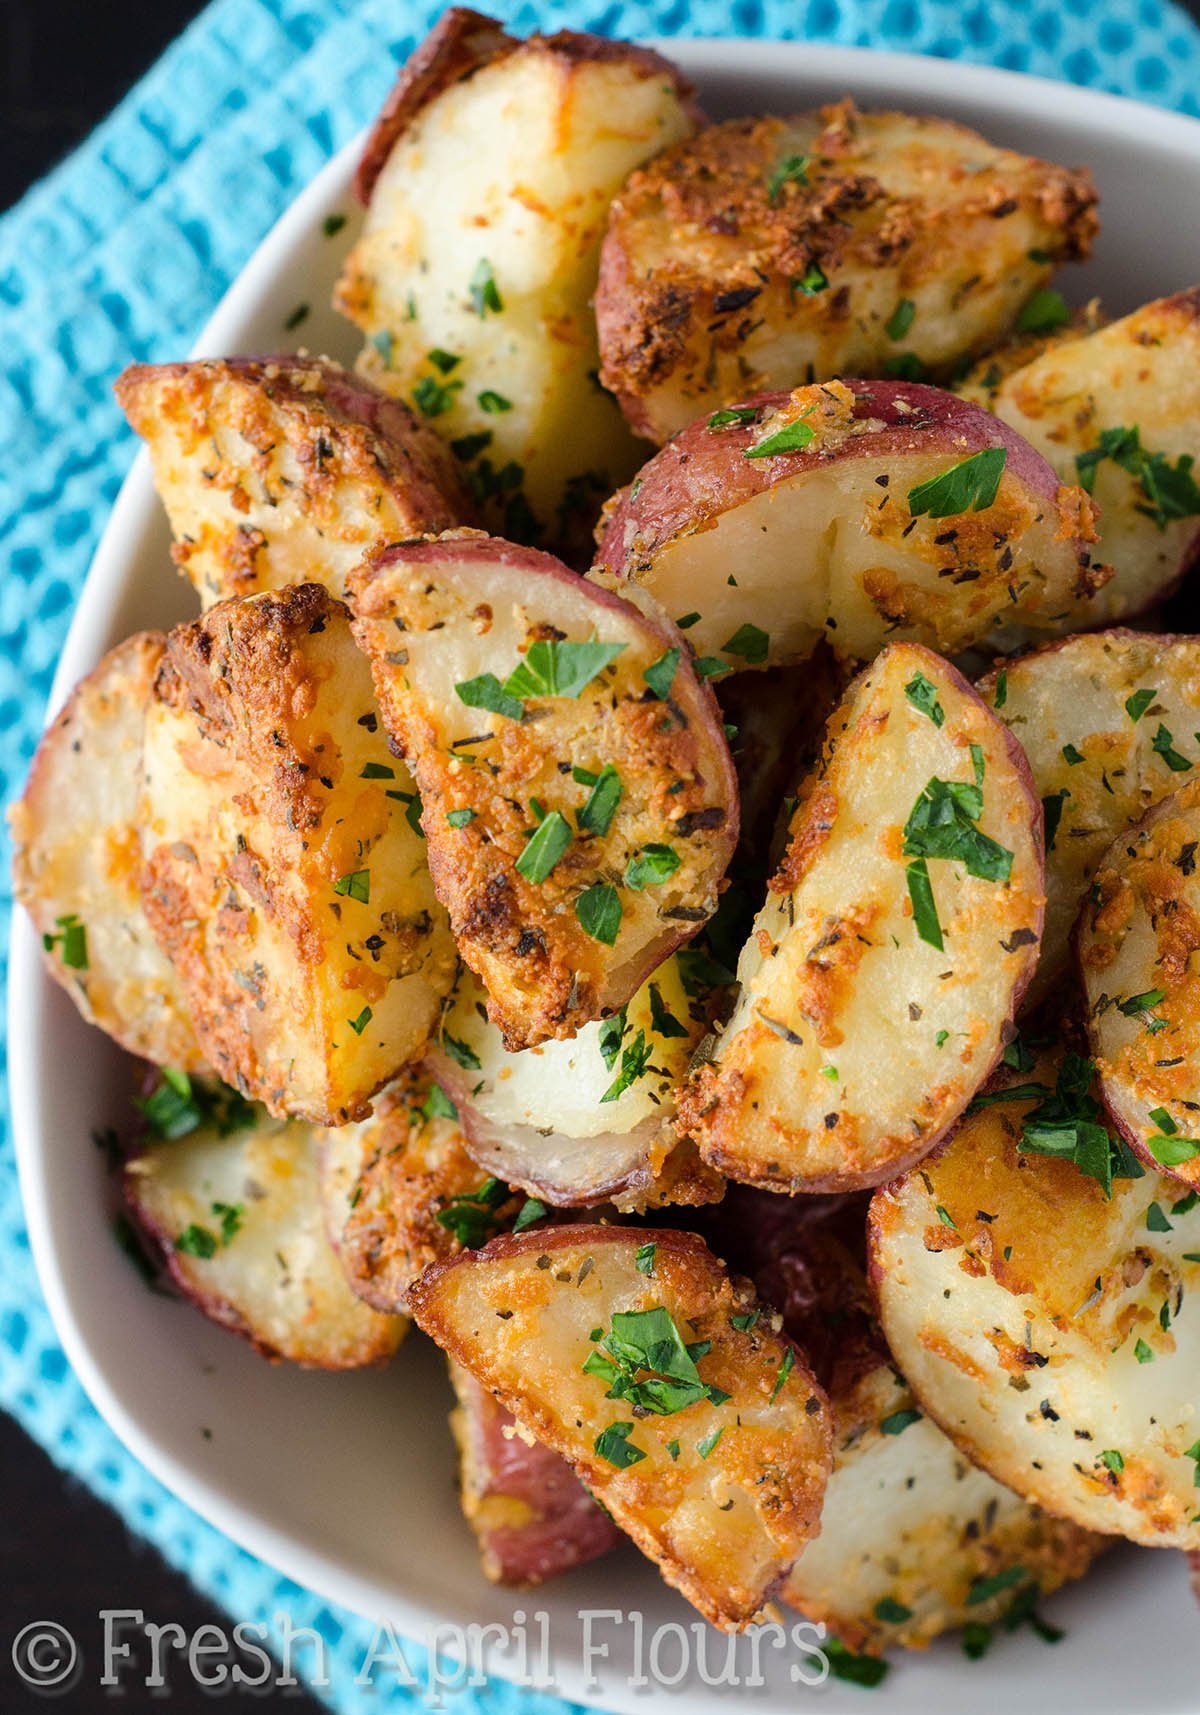 Картофельные блюда рецепты. Запеченный картофель. Печеный картофель. Картошка в духовке. Вкуснейшая картошка в духовке.